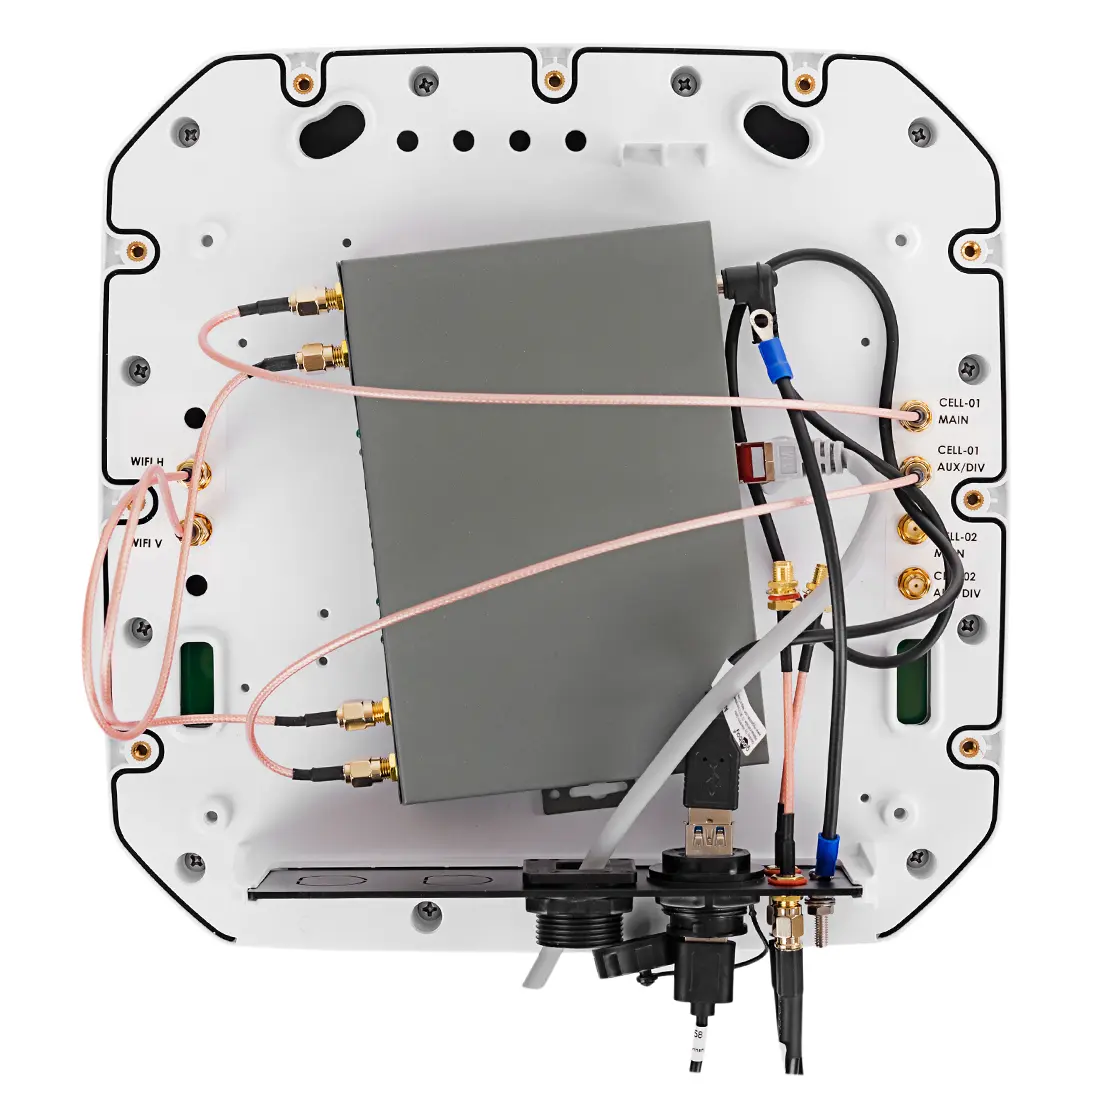 Antena kierunkowa Poynting z routerem przemysłowym SIR451V2 do  profesjonalnych zastosowań